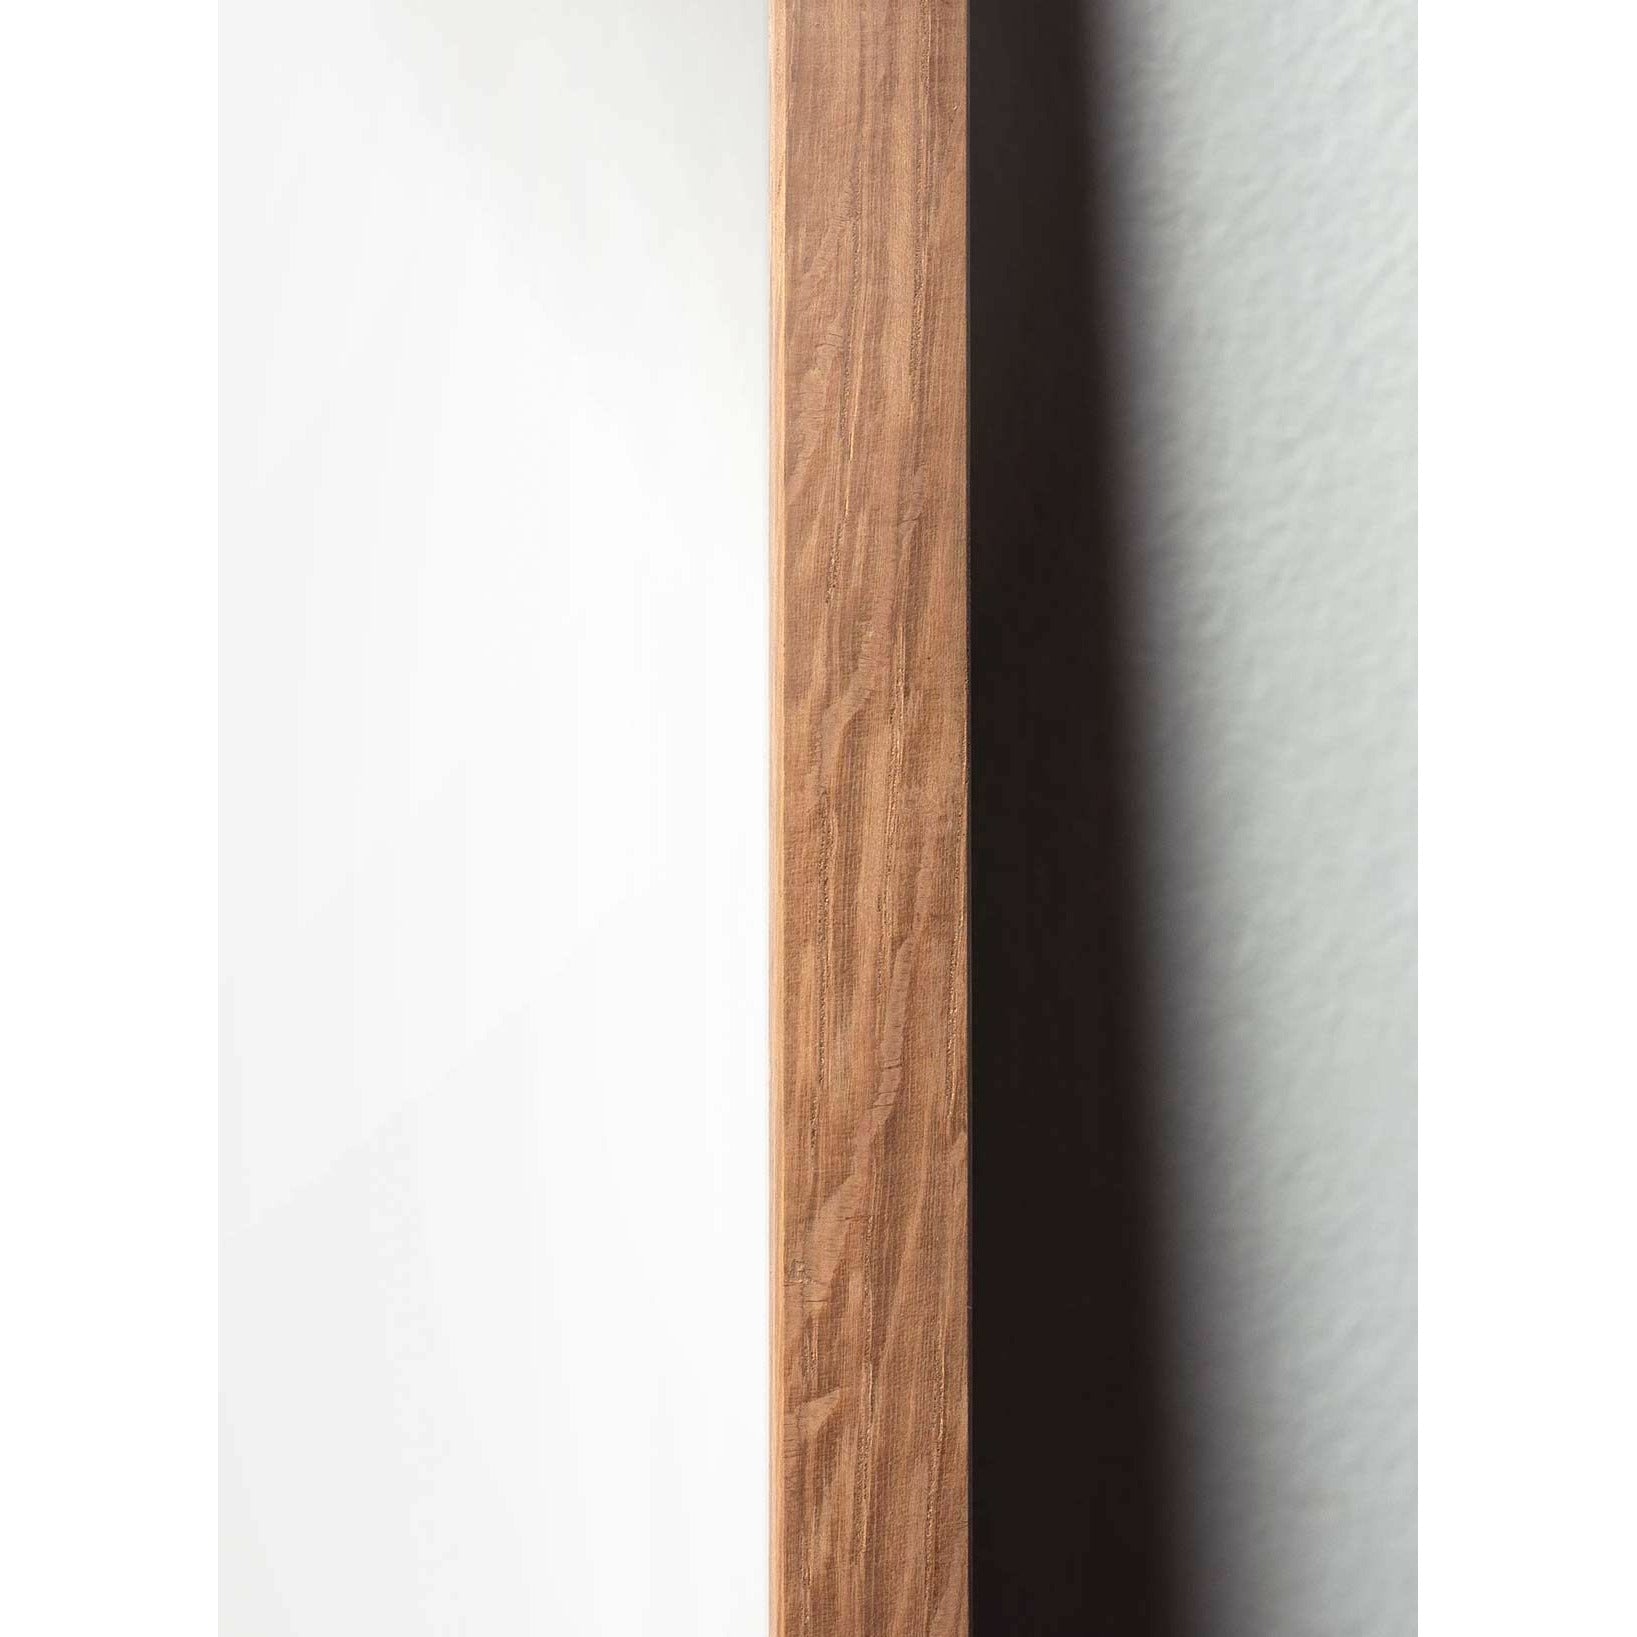 Pomysłowy plakat mrówek, rama wykonana z jasnego drewna 30x40 cm, białe tło